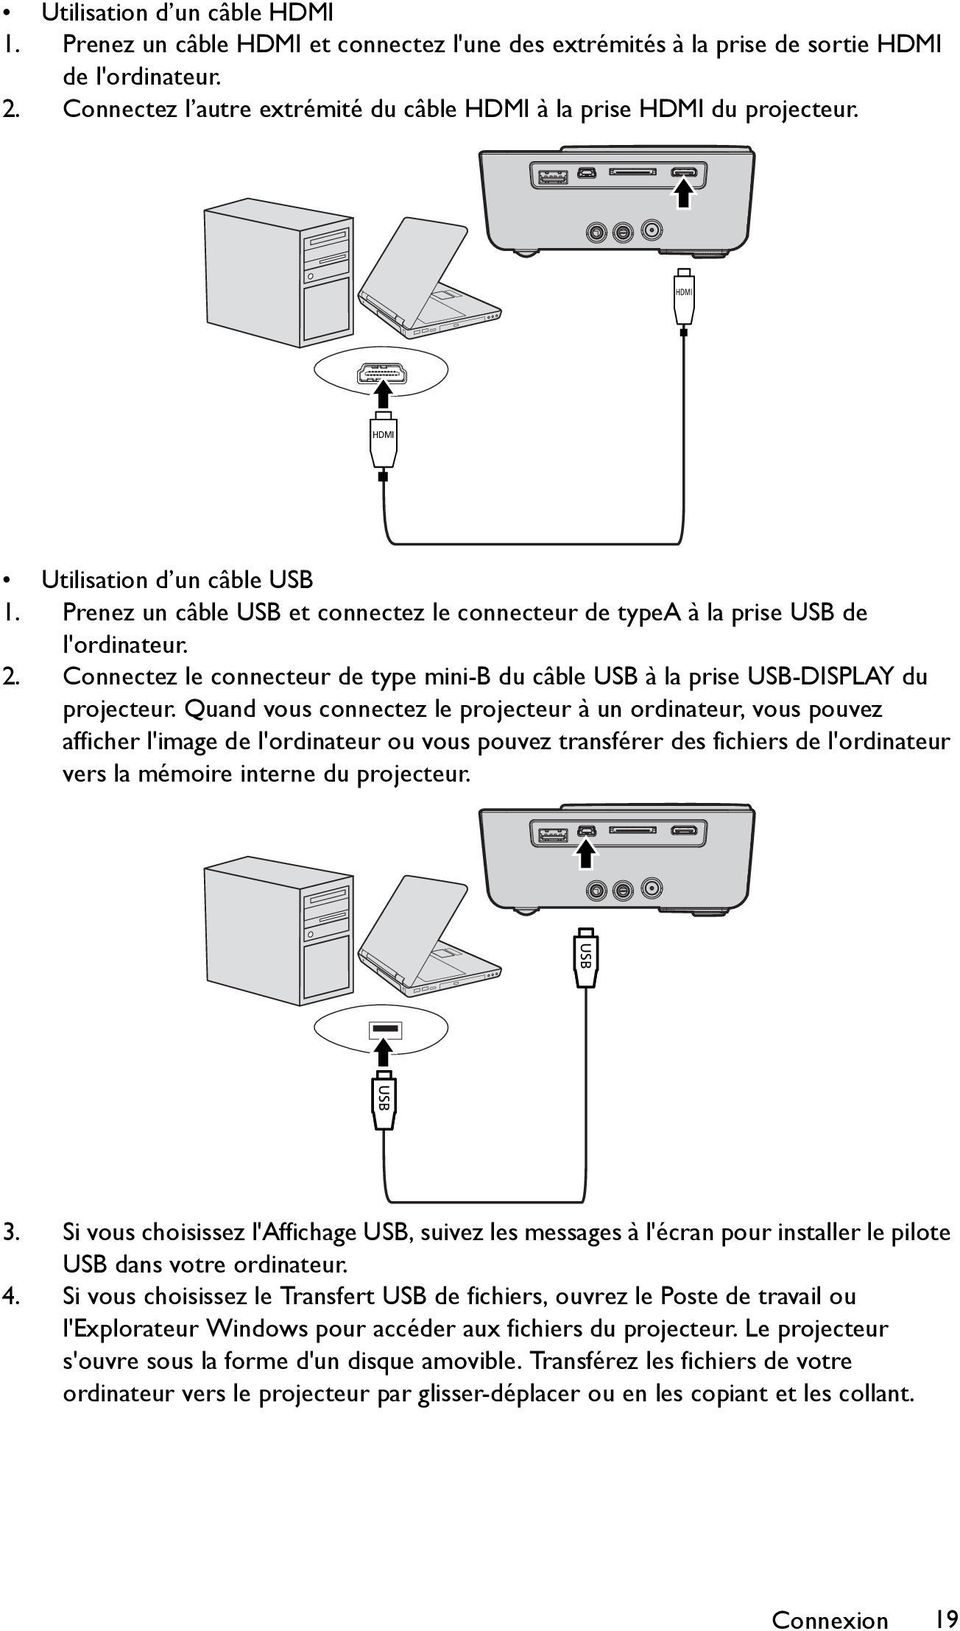 2. Connectez le connecteur de type mini-b du câble USB à la prise USB-DISPLAY du projecteur.